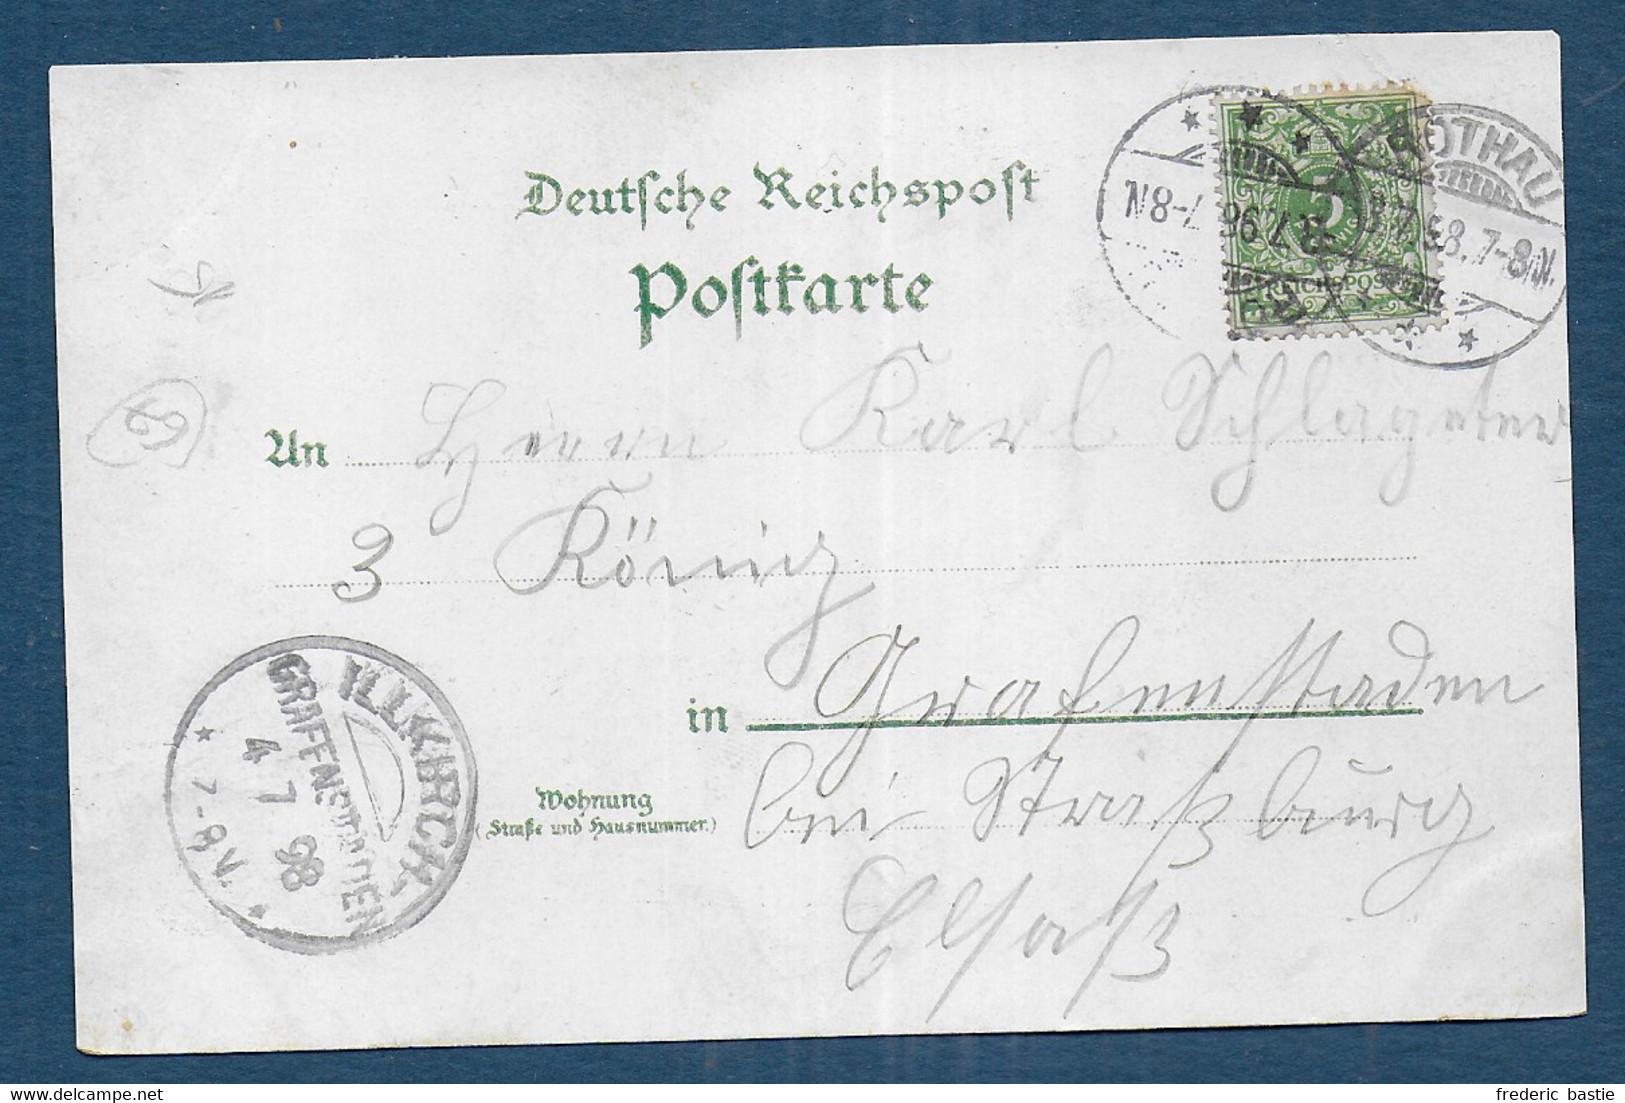 Souvenir De ROTHAU  1898 - Rothau